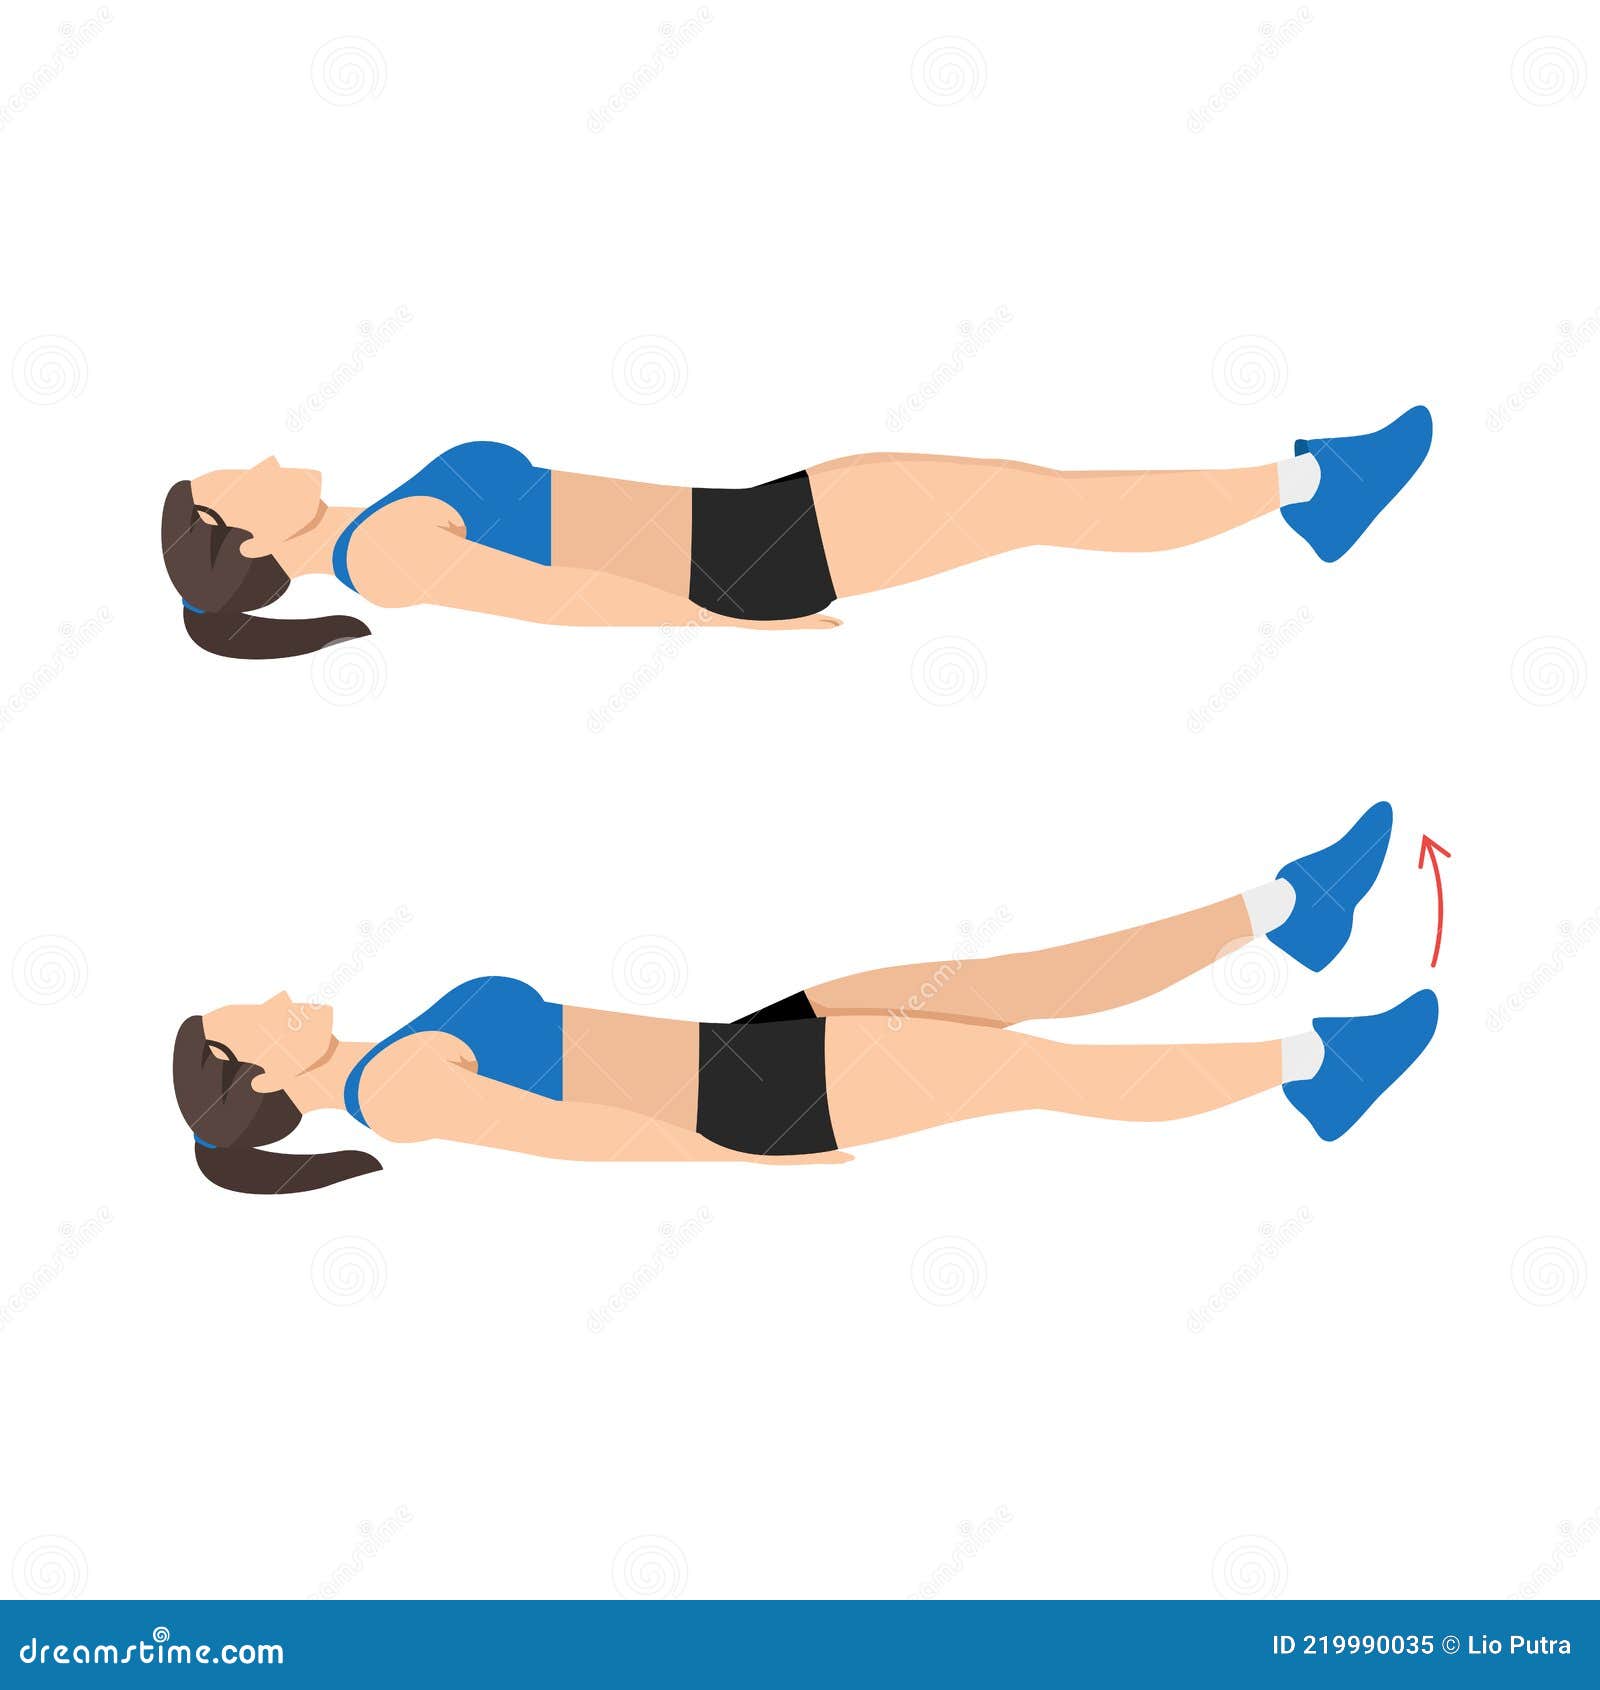 woman doing flutter kicks exercise